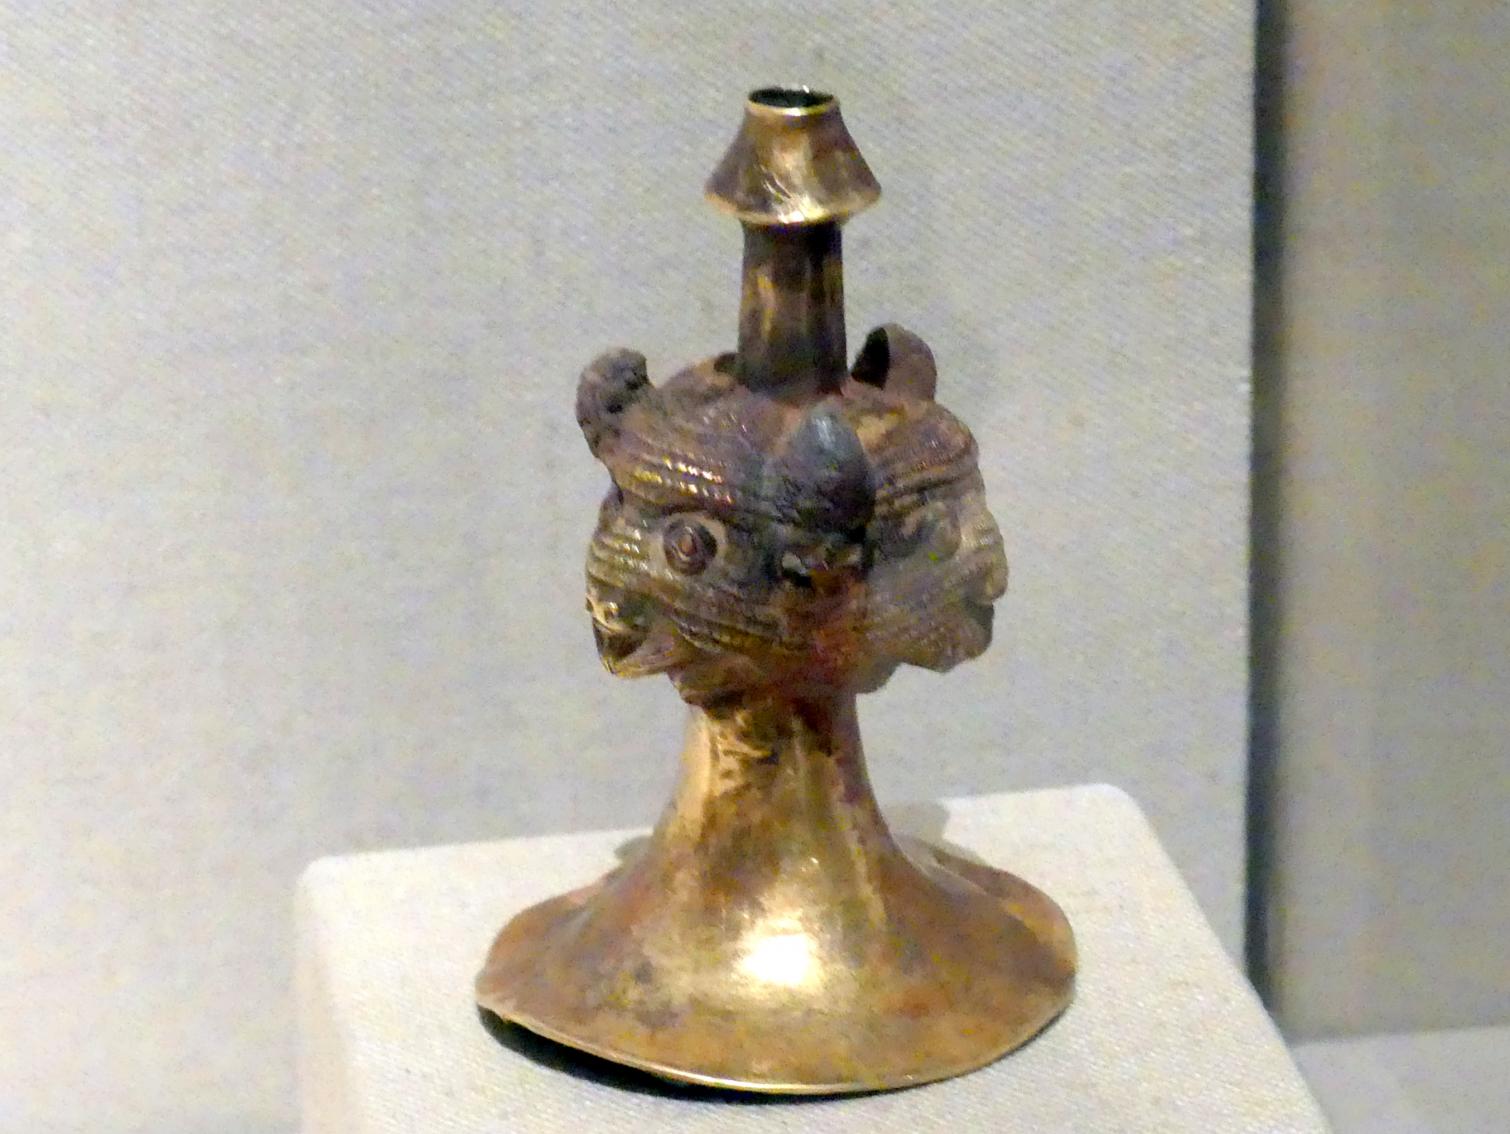 'Trompete' mit Bisonköpfen, 2000 - 1800 v. Chr.